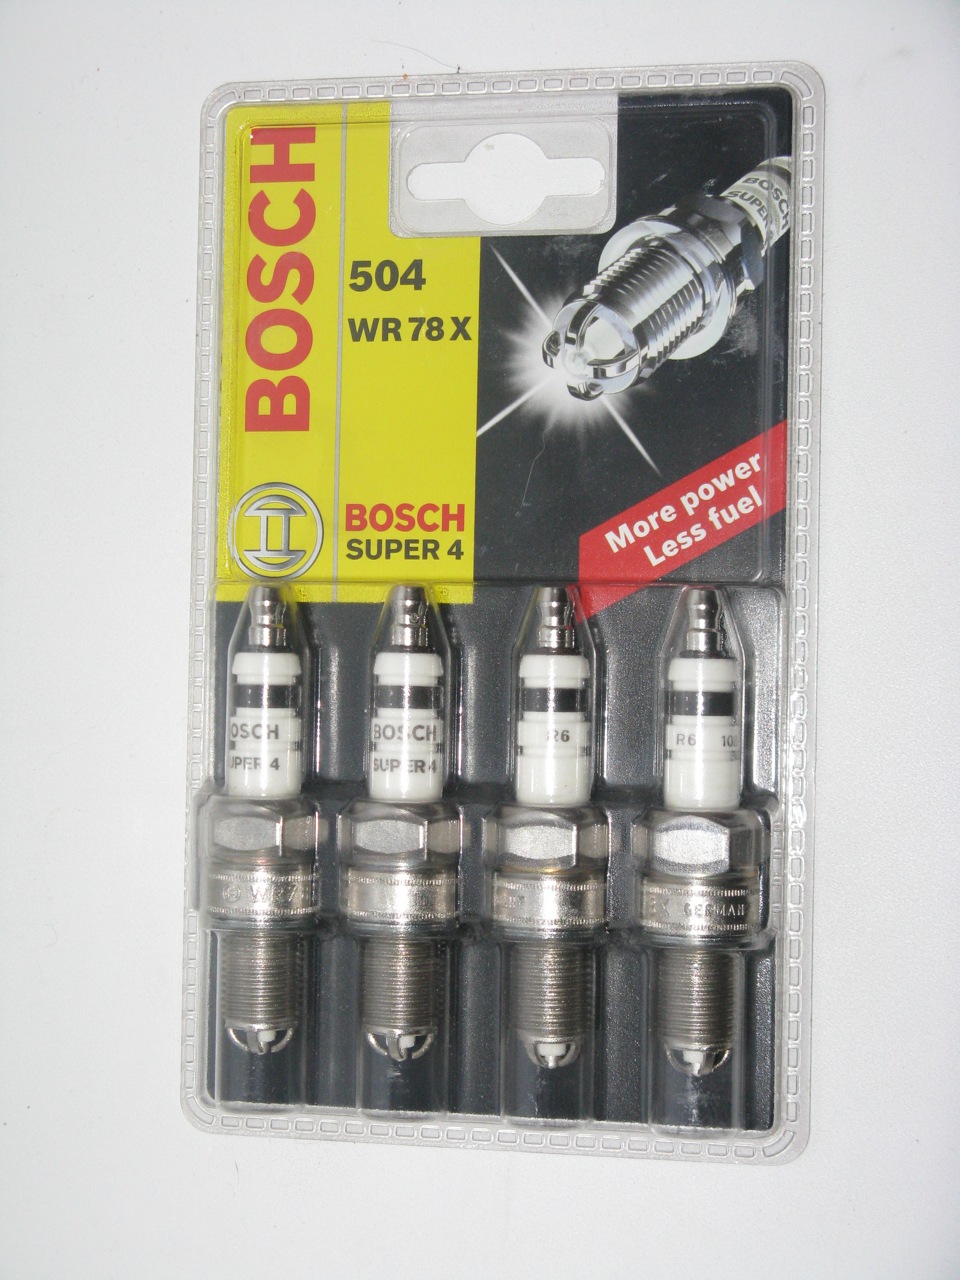 Bosch super 4. Bosch super 1.6 8 клапанов. Четырехэлектродные свечи Bosch 4512. Bosch super 4 для ВАЗ. Свечи на гранту 16 клапанов бош.